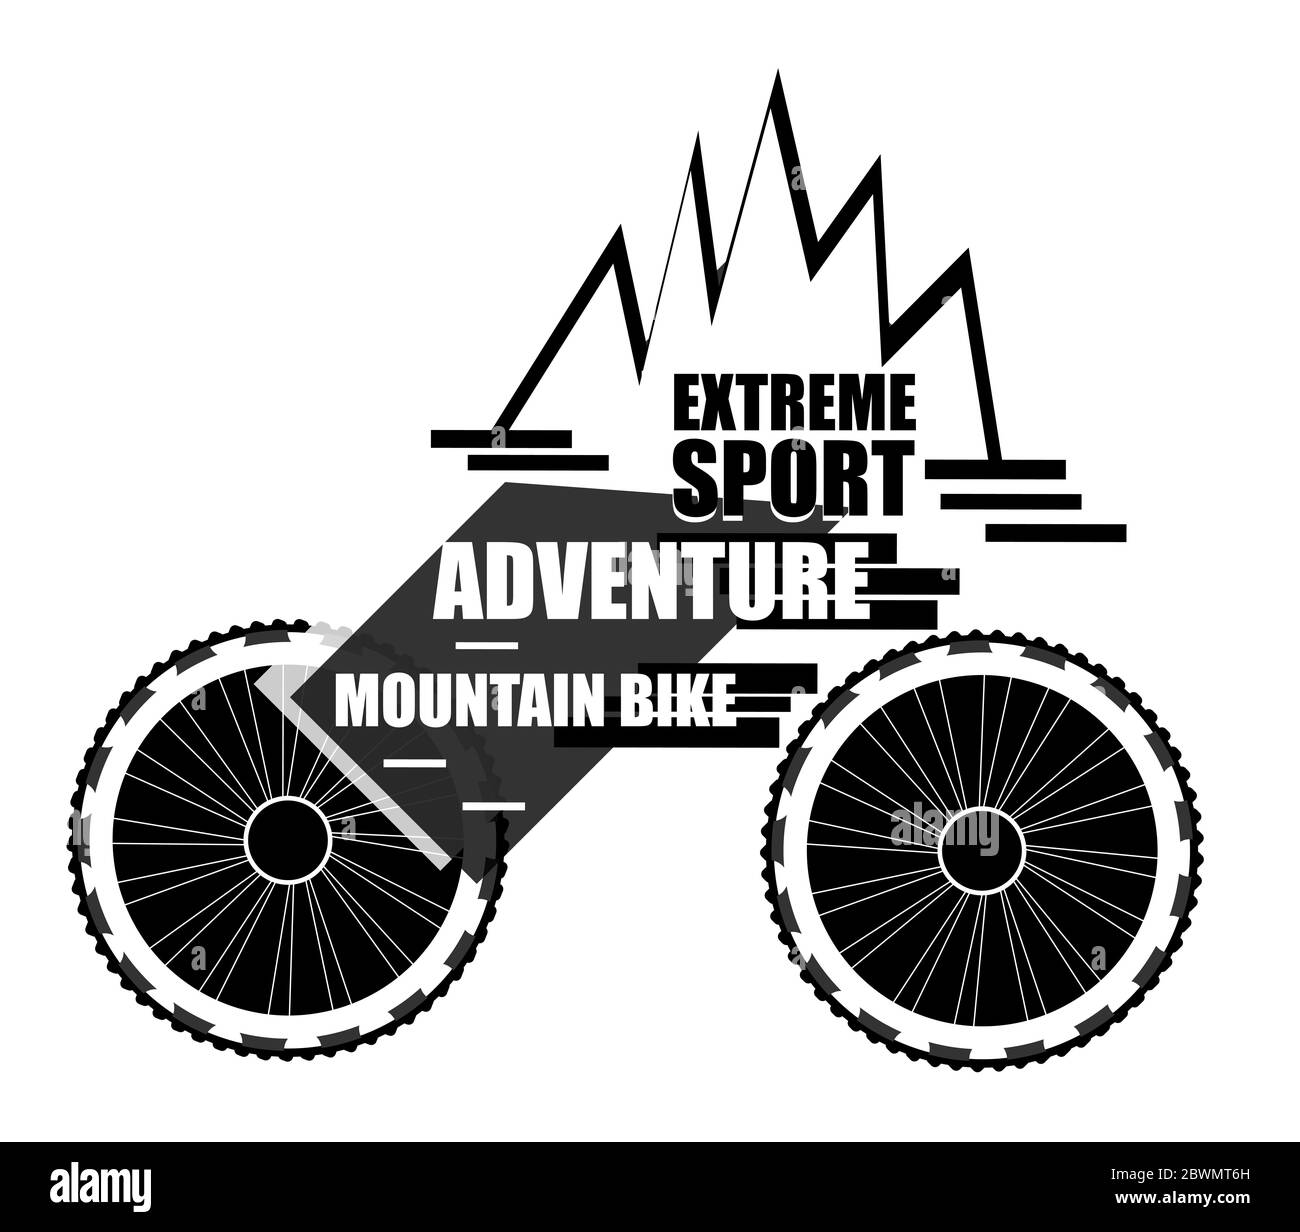 VTT. Concept de conception créative de Outdoor Adventure Trail. Roue de vélo et montagne abstraite Banque D'Images